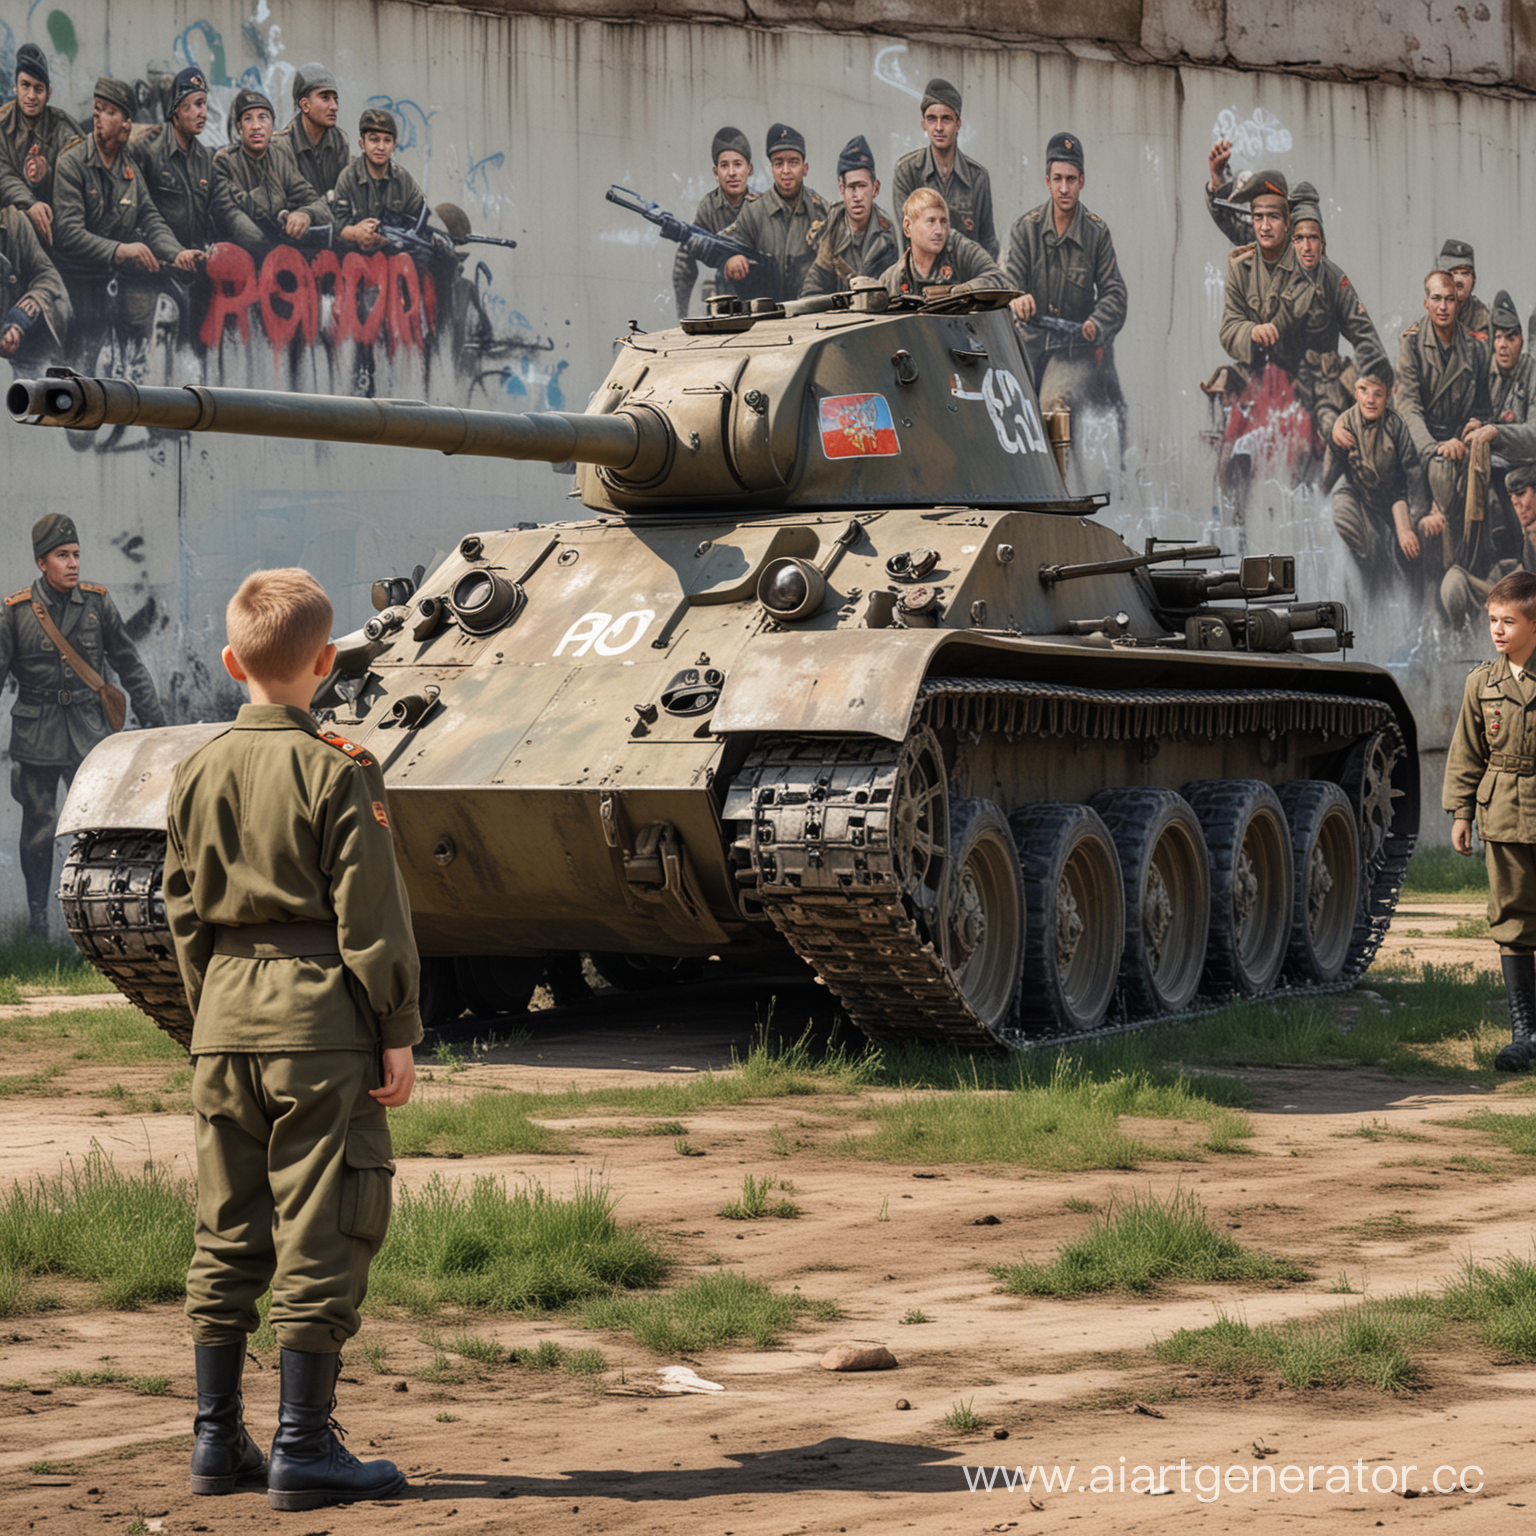 картинка на поле стоит танк Т-34 русский и рядом стоят солдаты в форме русской, дети в обычной одежде смотрят на танк, экскурсия, реалистичное фото, граффити